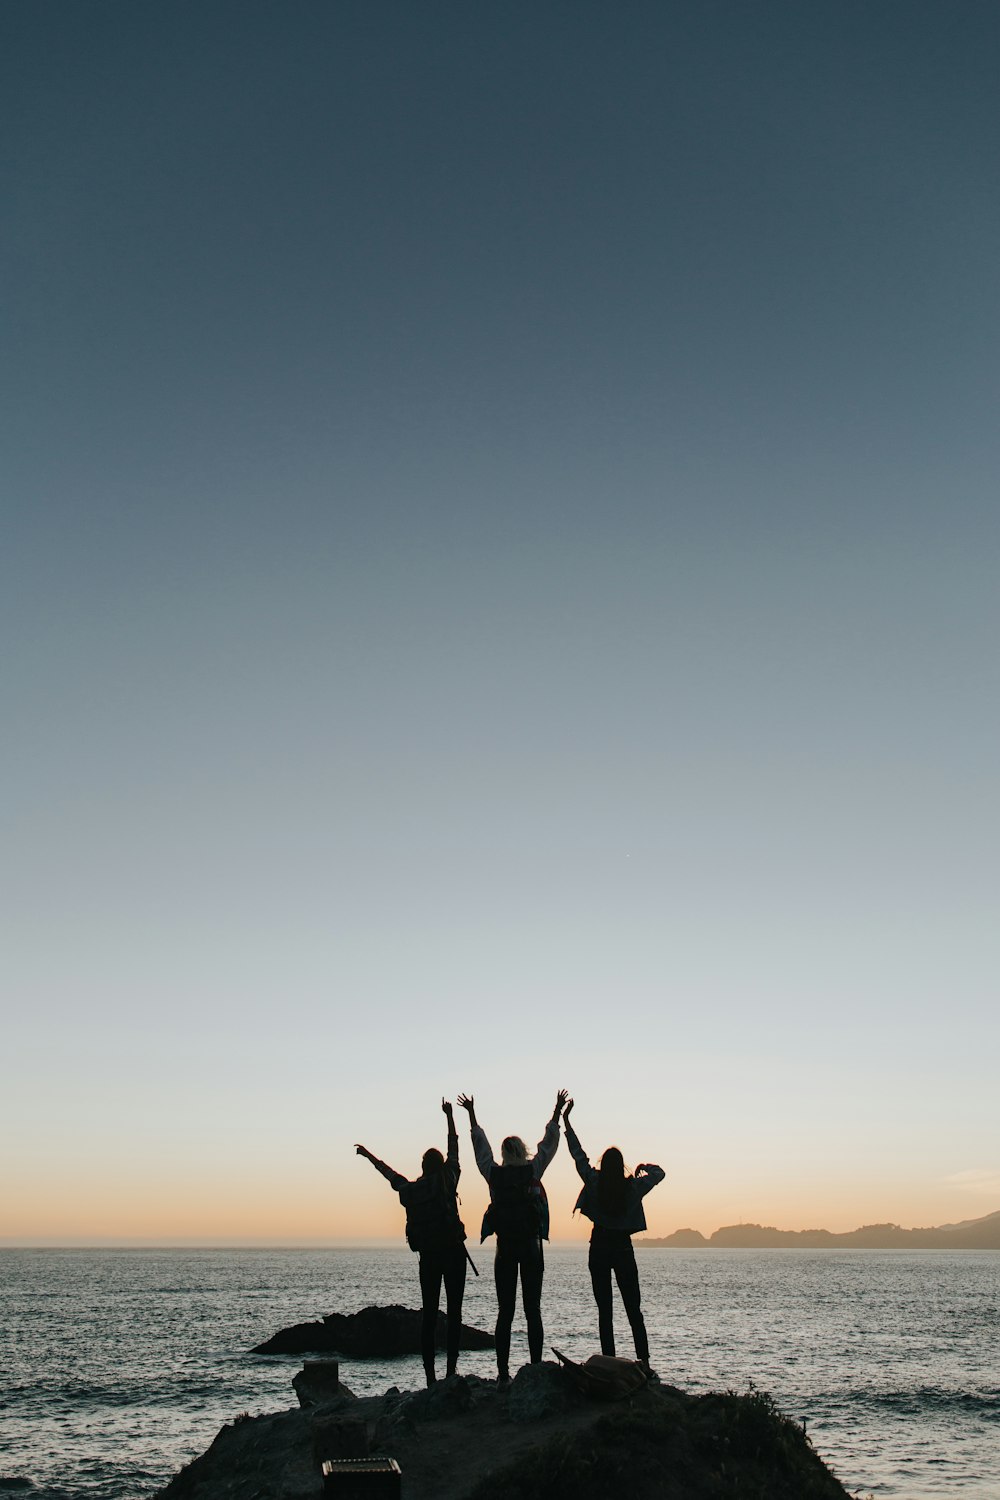 Fotografia de silhueta de pessoas levantando as mãos enquanto estão em pé na ilha